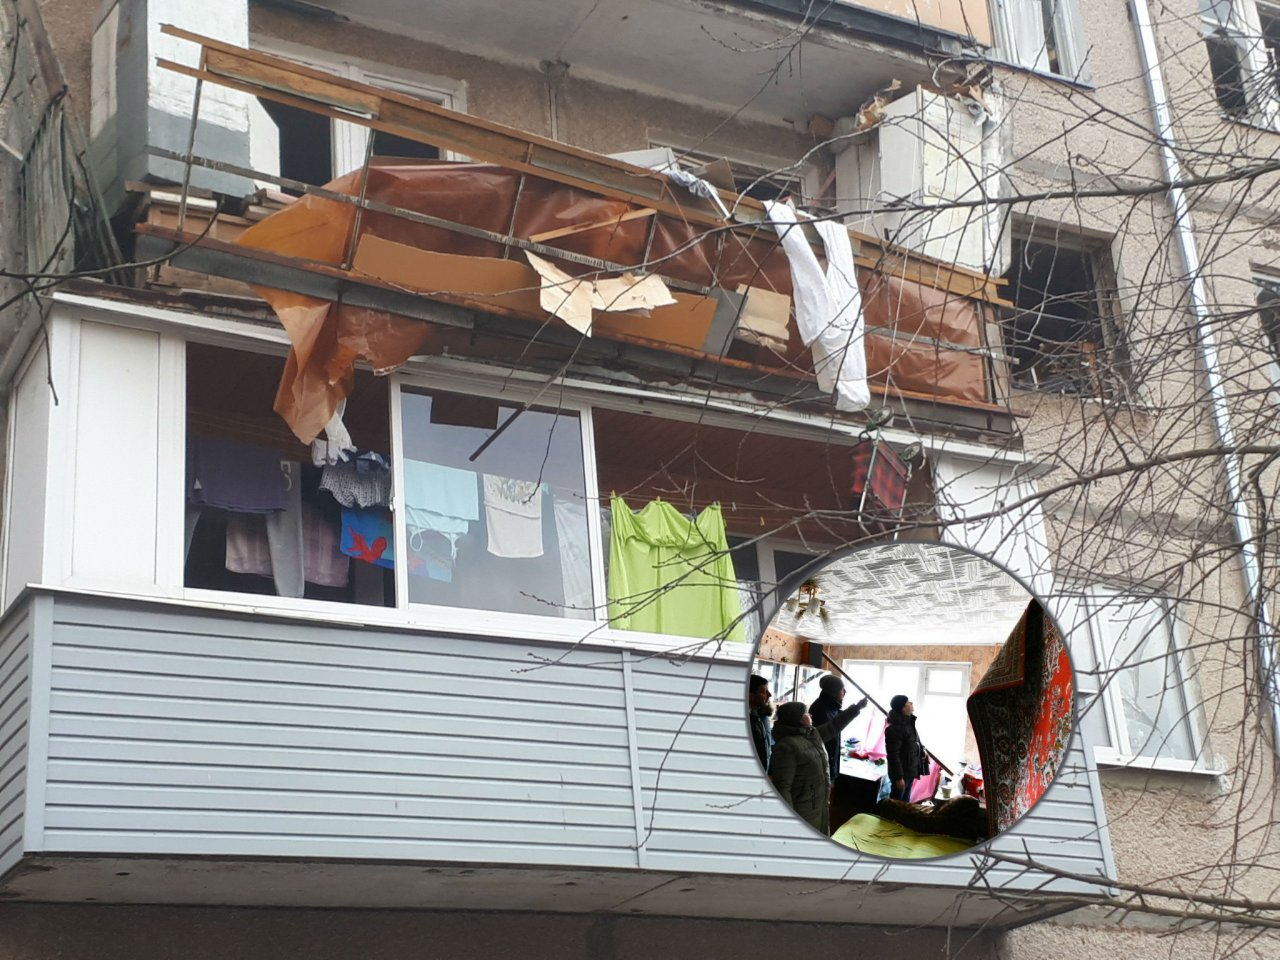 "Не могу даже плакать": крик души жительницы дома, где взорвался газ. Фото из Ярославля